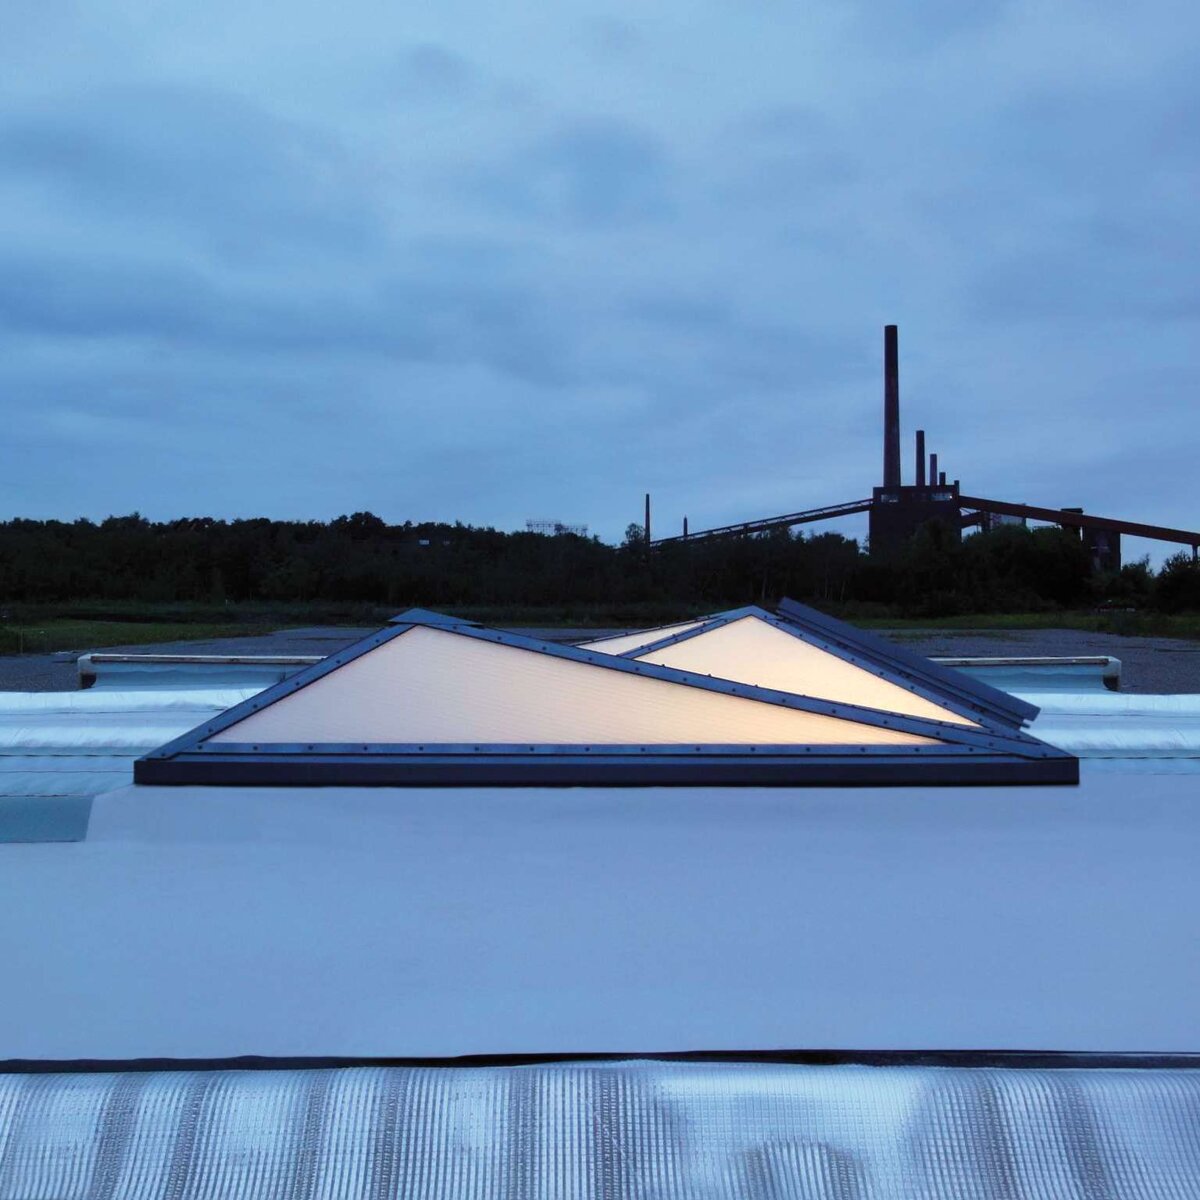 openOffice | Zeche Zollverein, Essen • Yeni pleksiglas camlama mükemmel ışık iletimi sağlar ve bununla birlikte mekanın en ücra köşesine kadar gölgesiz bir aydınlatma sağlar.